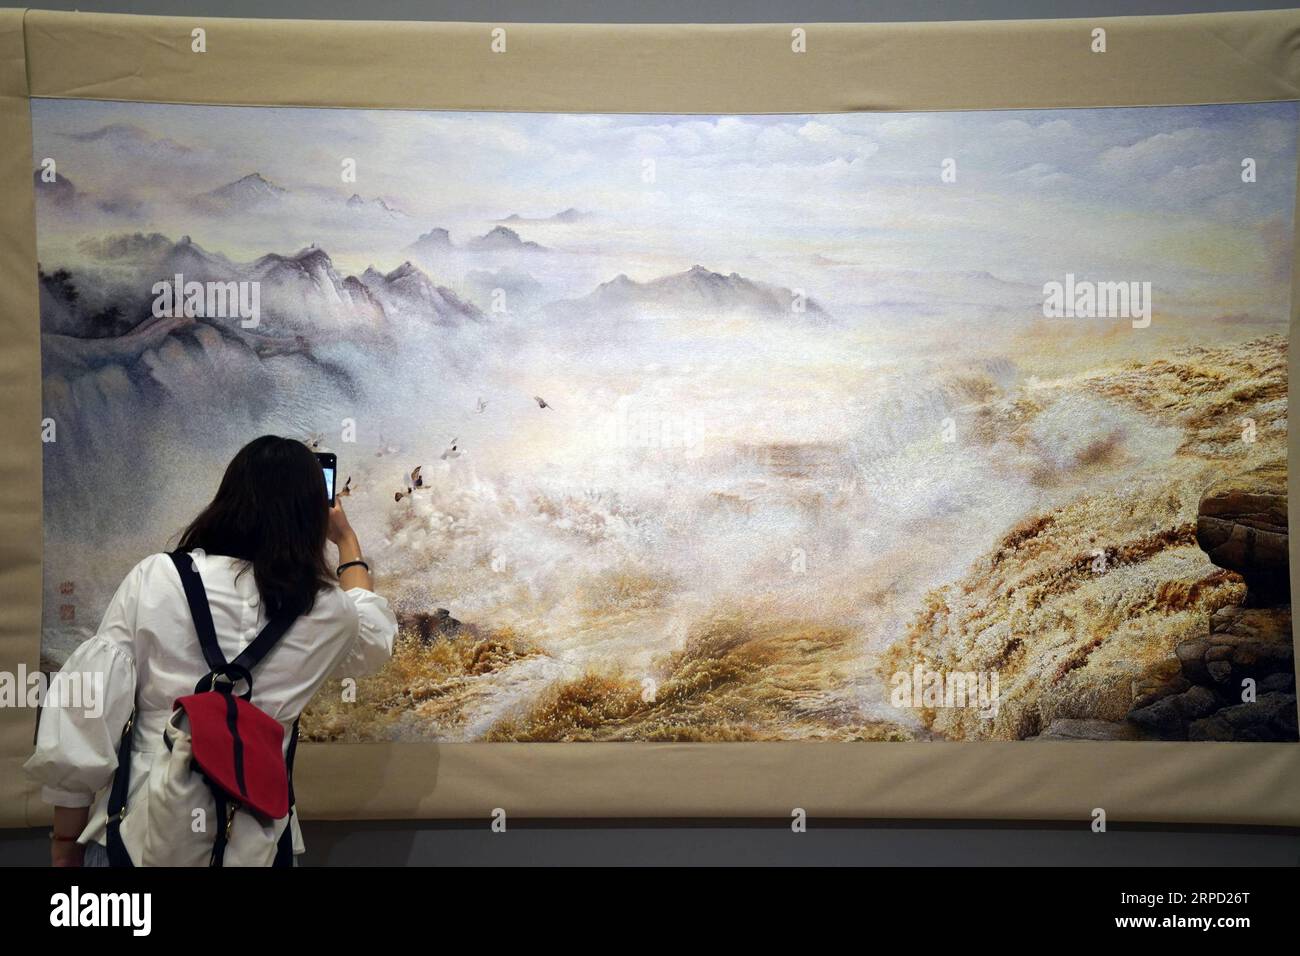 (190719) -- PEKING, 19. Juli 2019 -- Ein Besucher fotografiert eine Ausstellung während des Splendid China -- Ausstellung für kunstvolle Suzhou-Stickerei im National Art Museum of China (NAMOC) in Peking, Hauptstadt von China, 19. Juli 2019. Die Ausstellung, die am Freitag hier eröffnet wird, zeigt eine reiche Sammlung von Werken der chinesischen Suzhou-Stickmeister in der zeitgenössischen Ära. ) CHINA-BEIJING-ART-SUZHOU STICKAUSSTELLUNG (CN) JINXLIANGKUAI PUBLICATIONXNOTXINXCHN Stockfoto